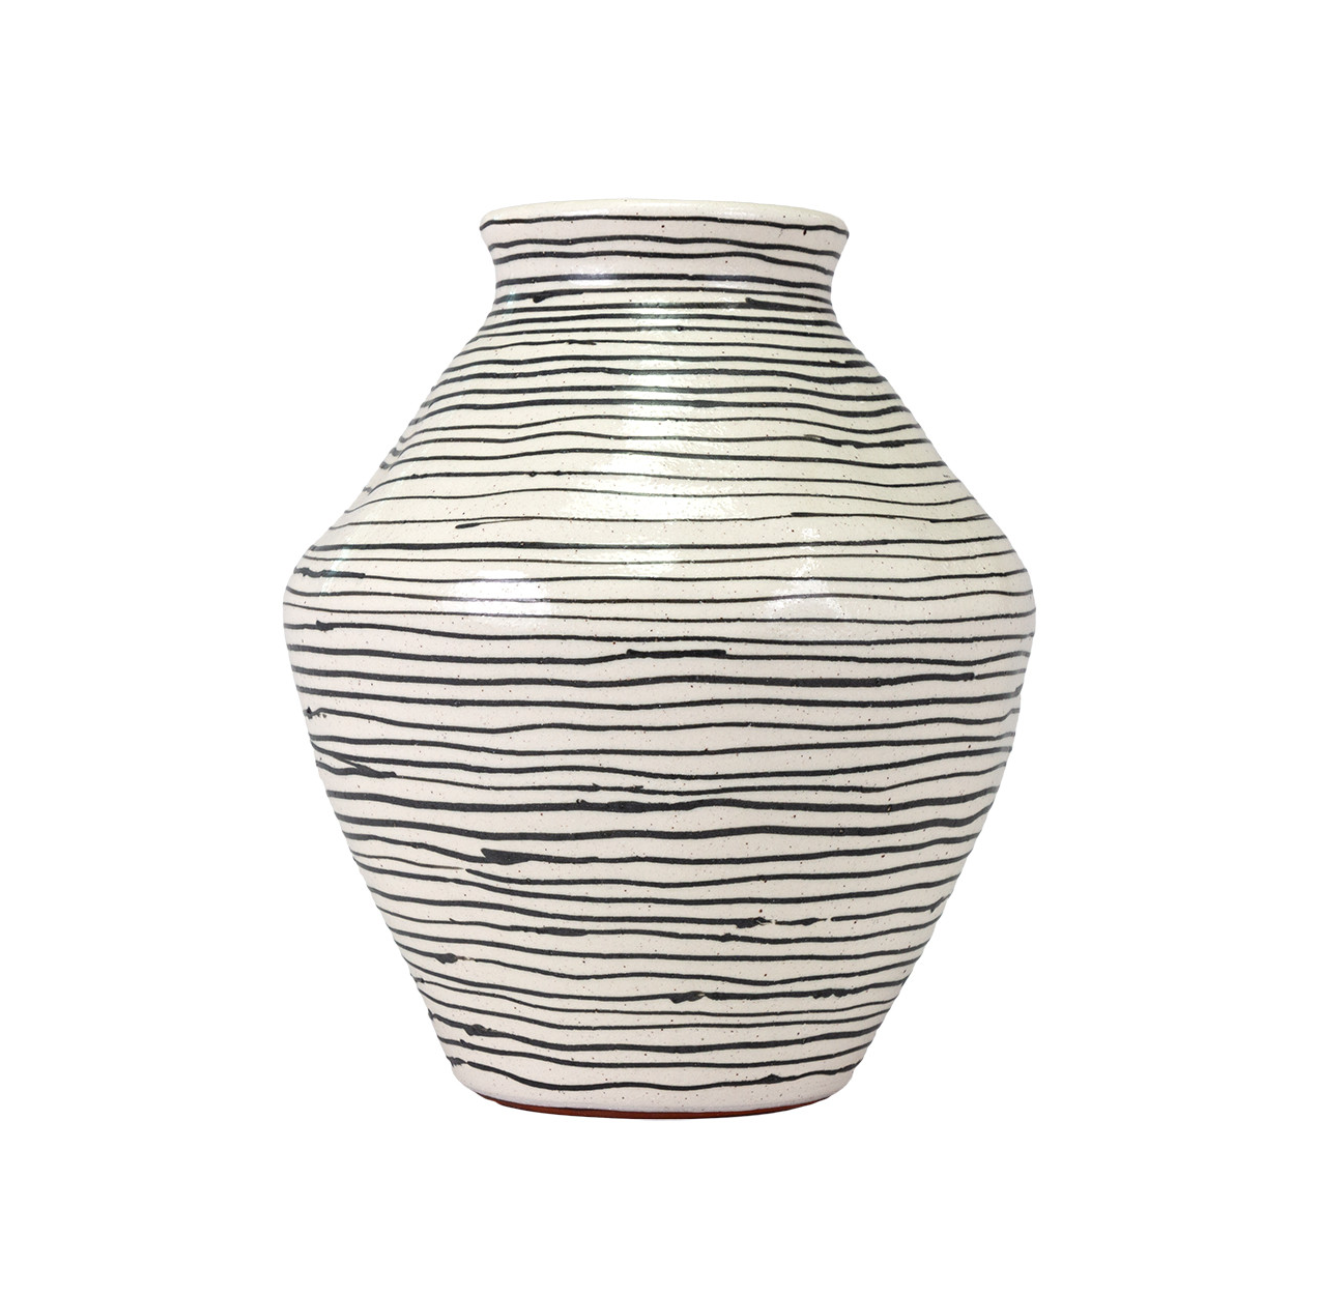 38-377 Isha Tall vase